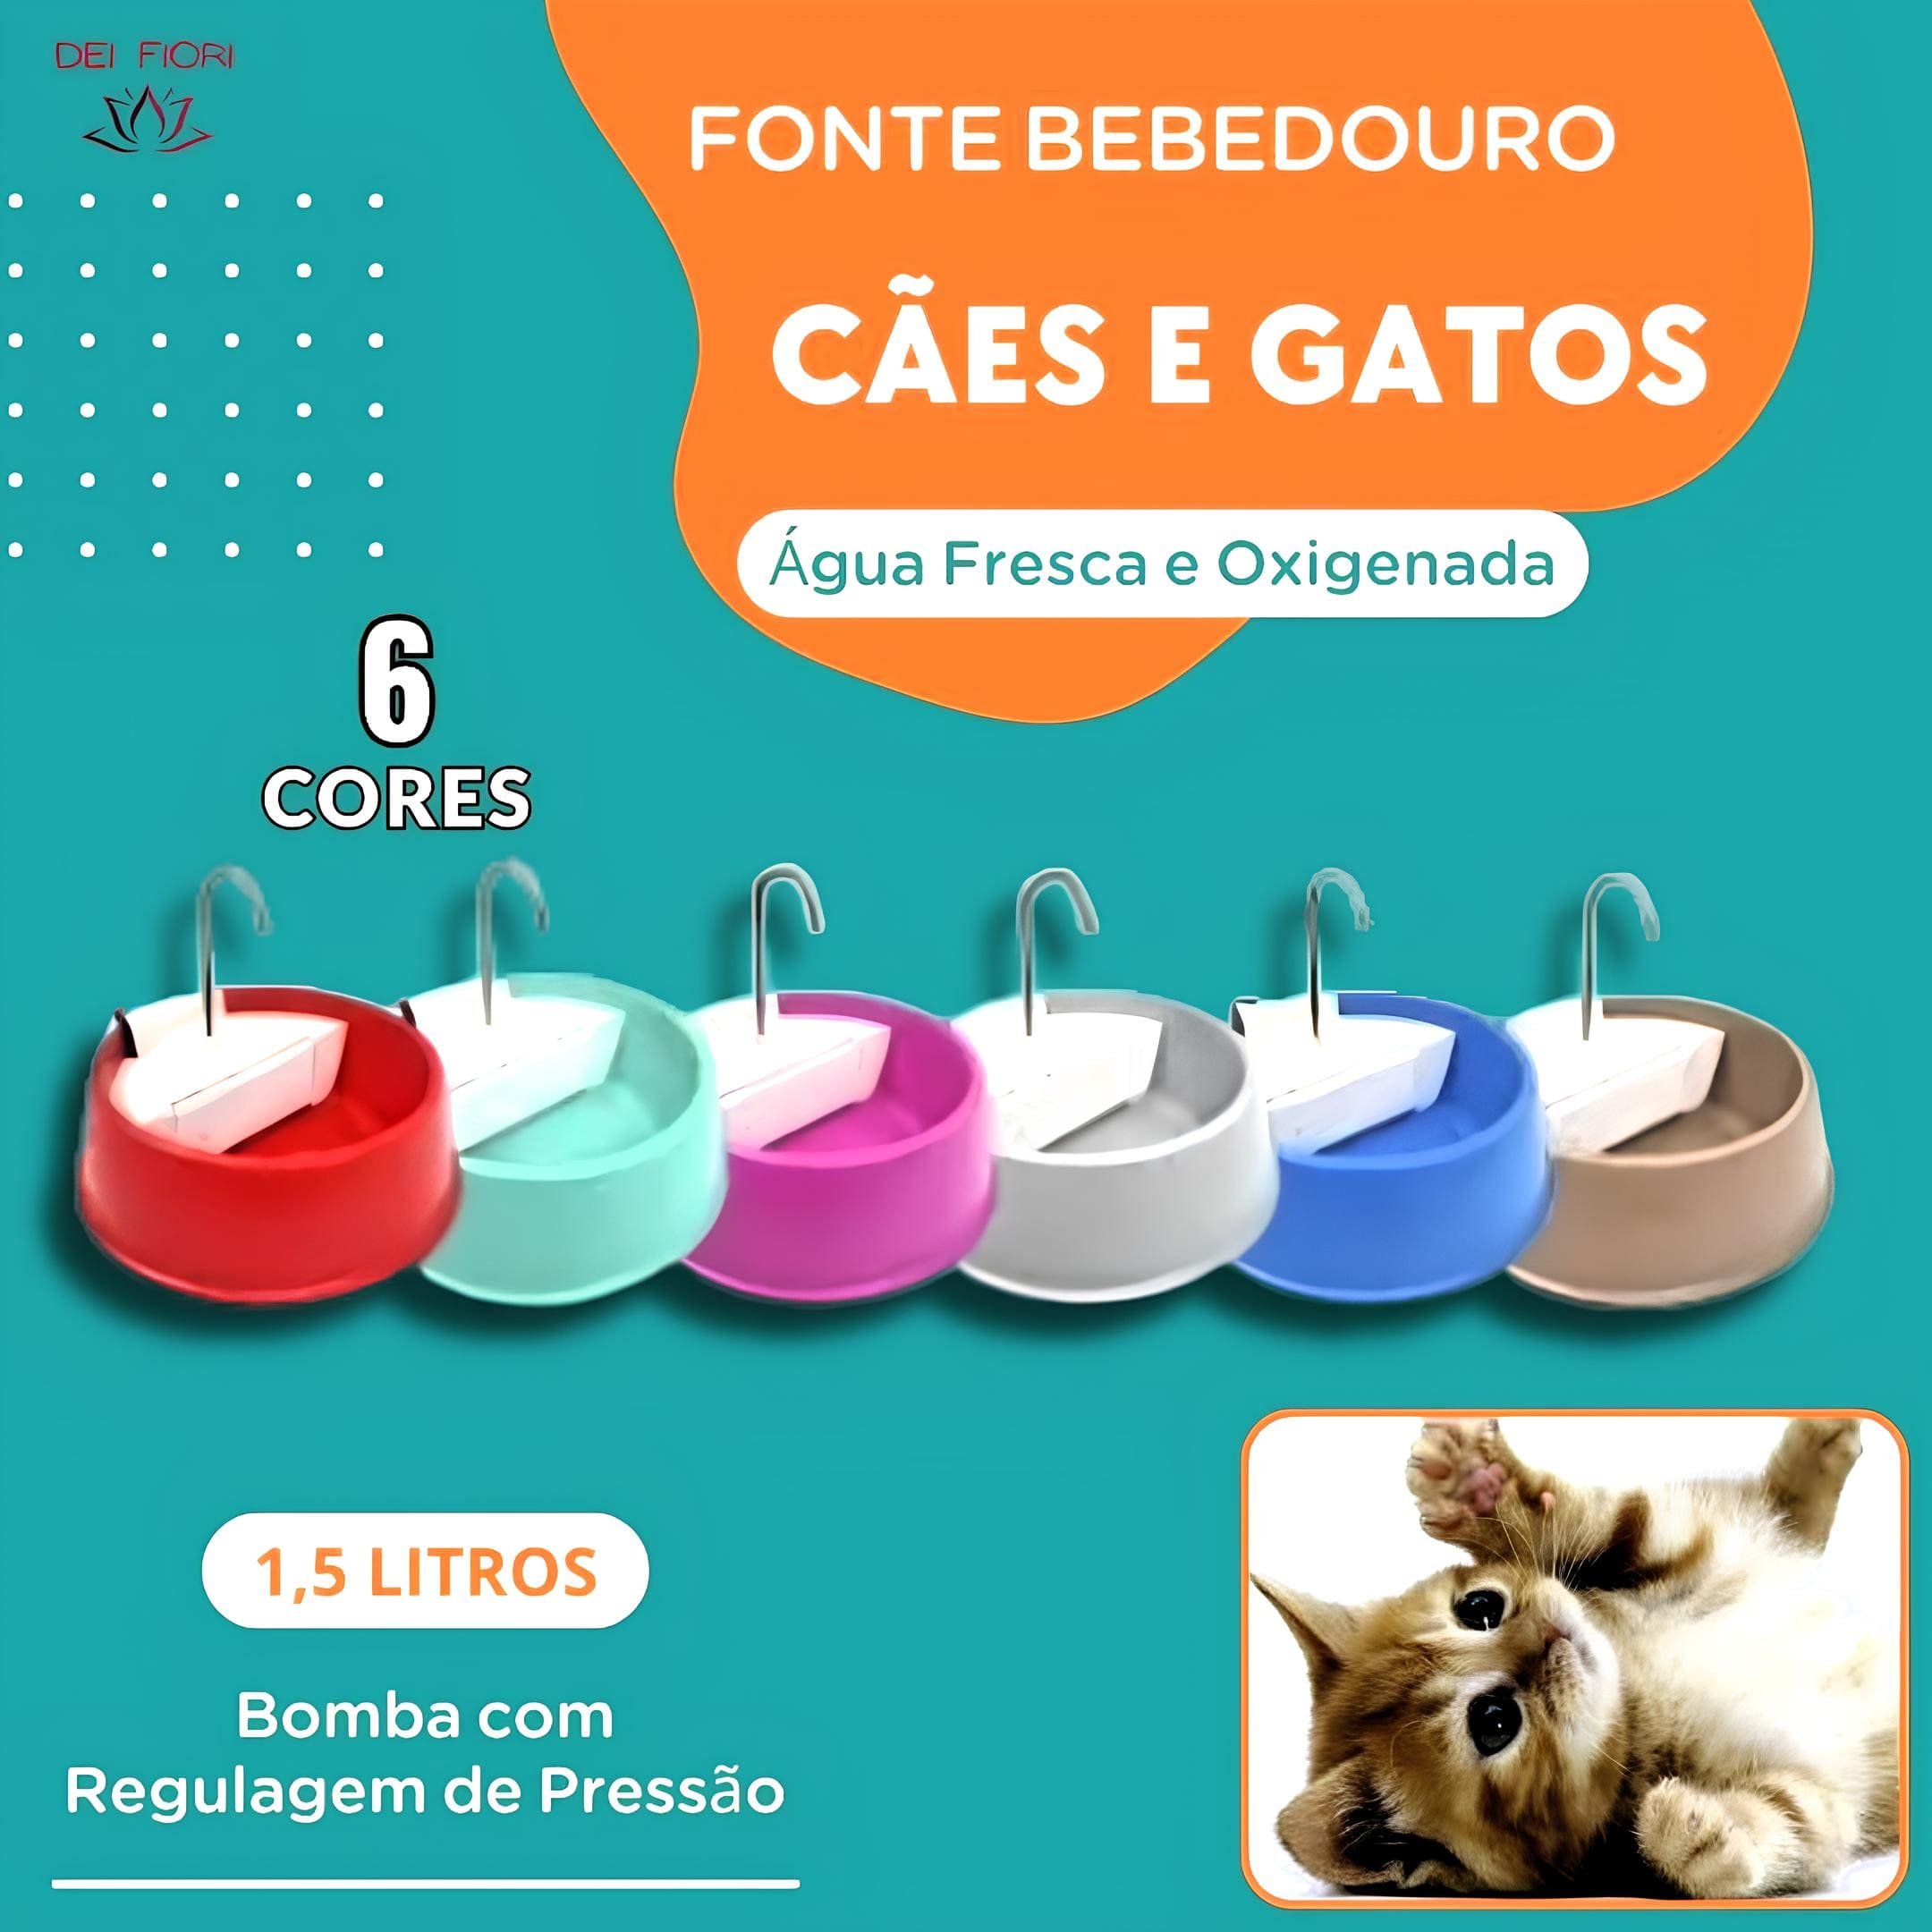 Fonte Bebedouro Gatos Cães Bivolt Automática Agua Fresca Pet Filtro Carvao Ativ. Hidratacao Saudavel - 8